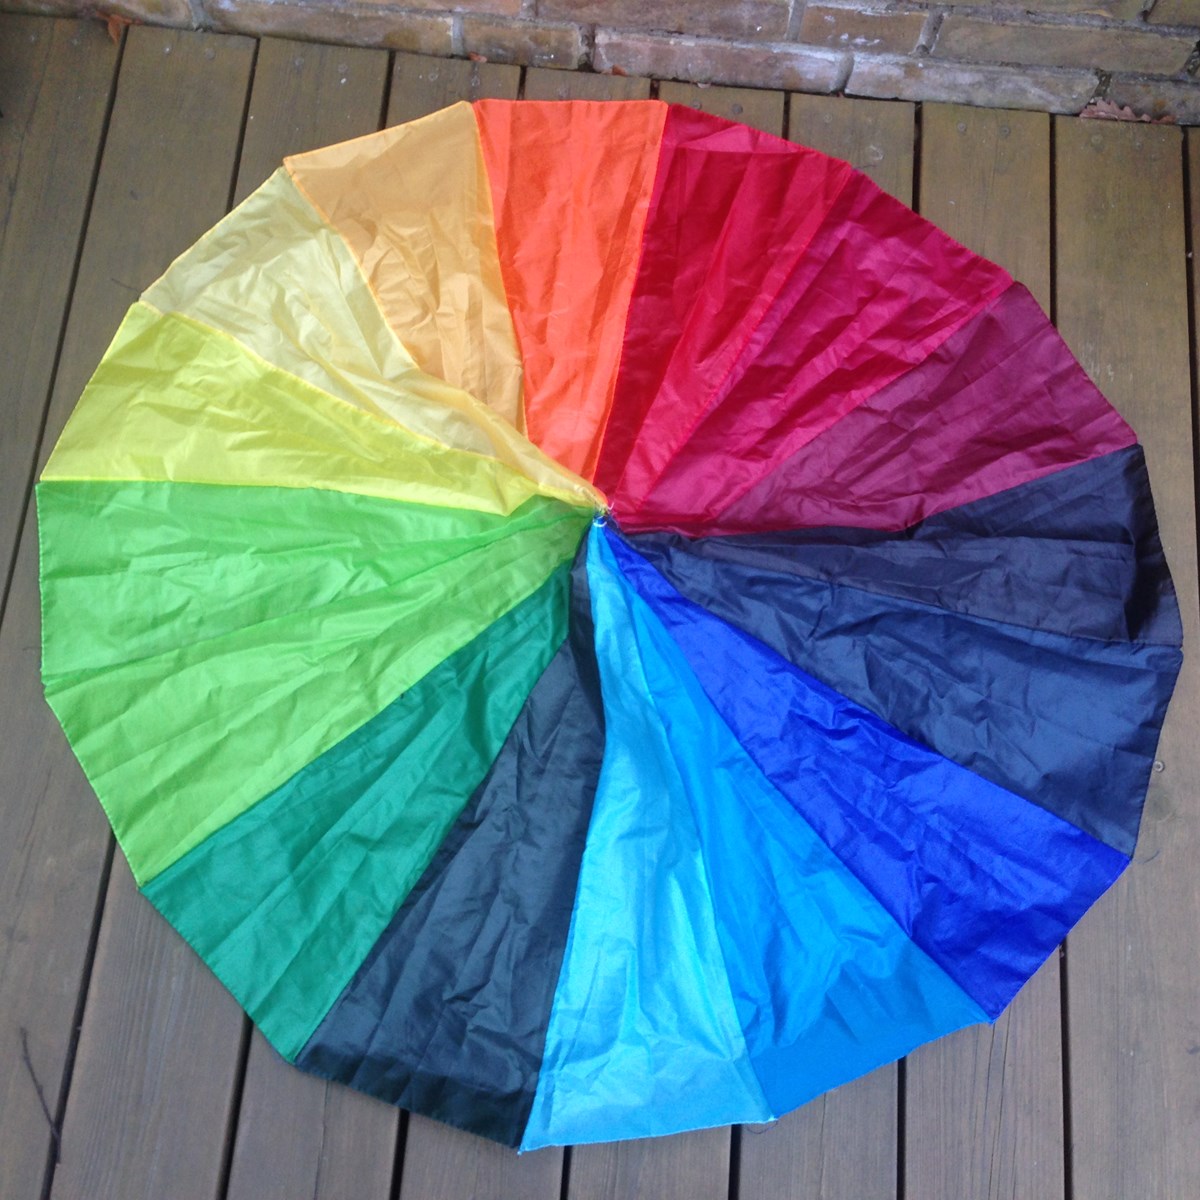 Sådan så den fine paraplydug ud, efter jeg havde befriet det fra stellet – og givet det en kort vask